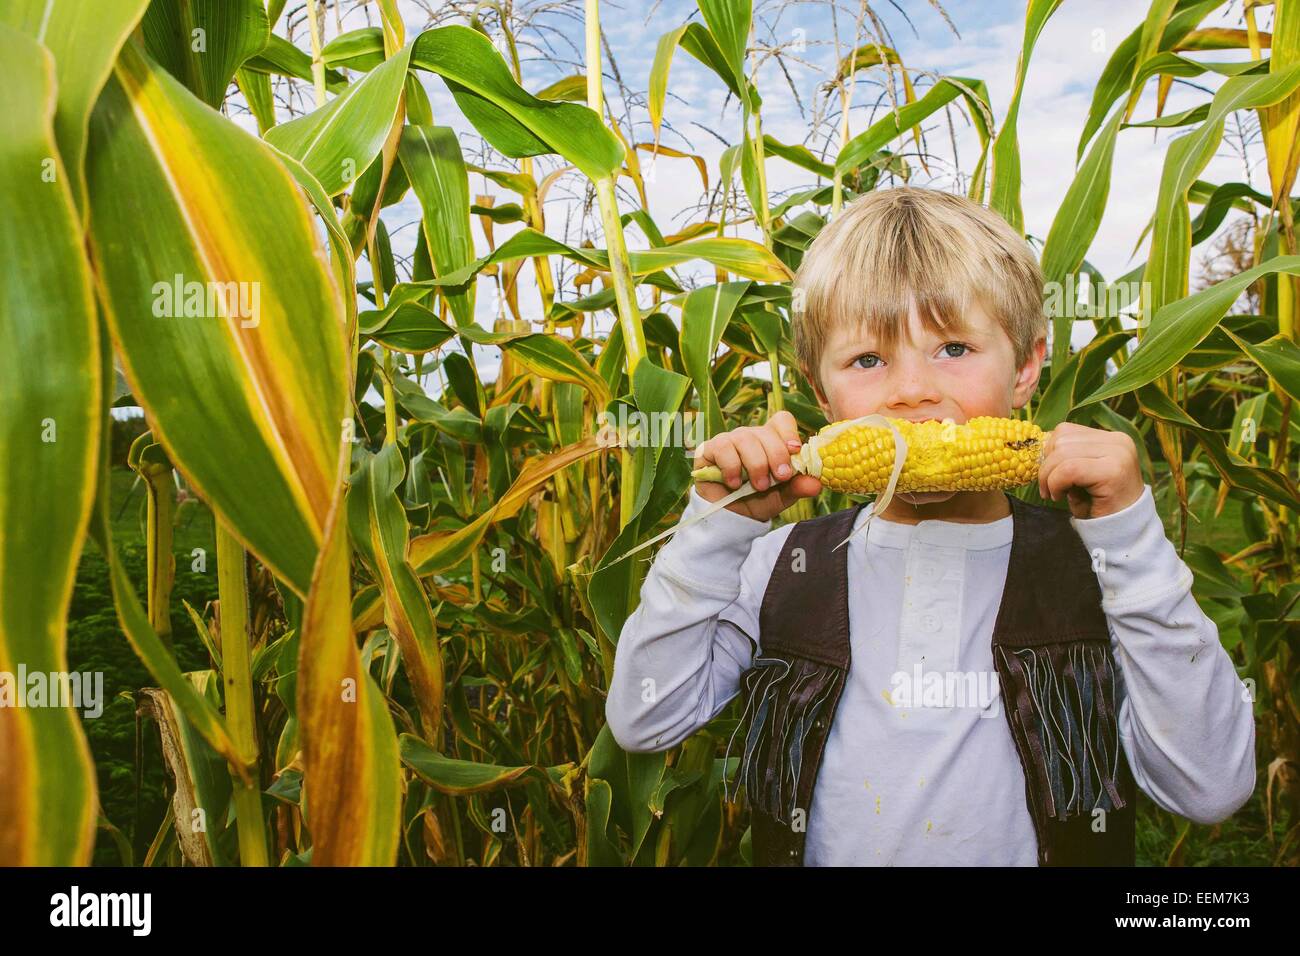 Junge, der in einem Maisfeld steht, das Süßkorn isst, USA Stockfoto